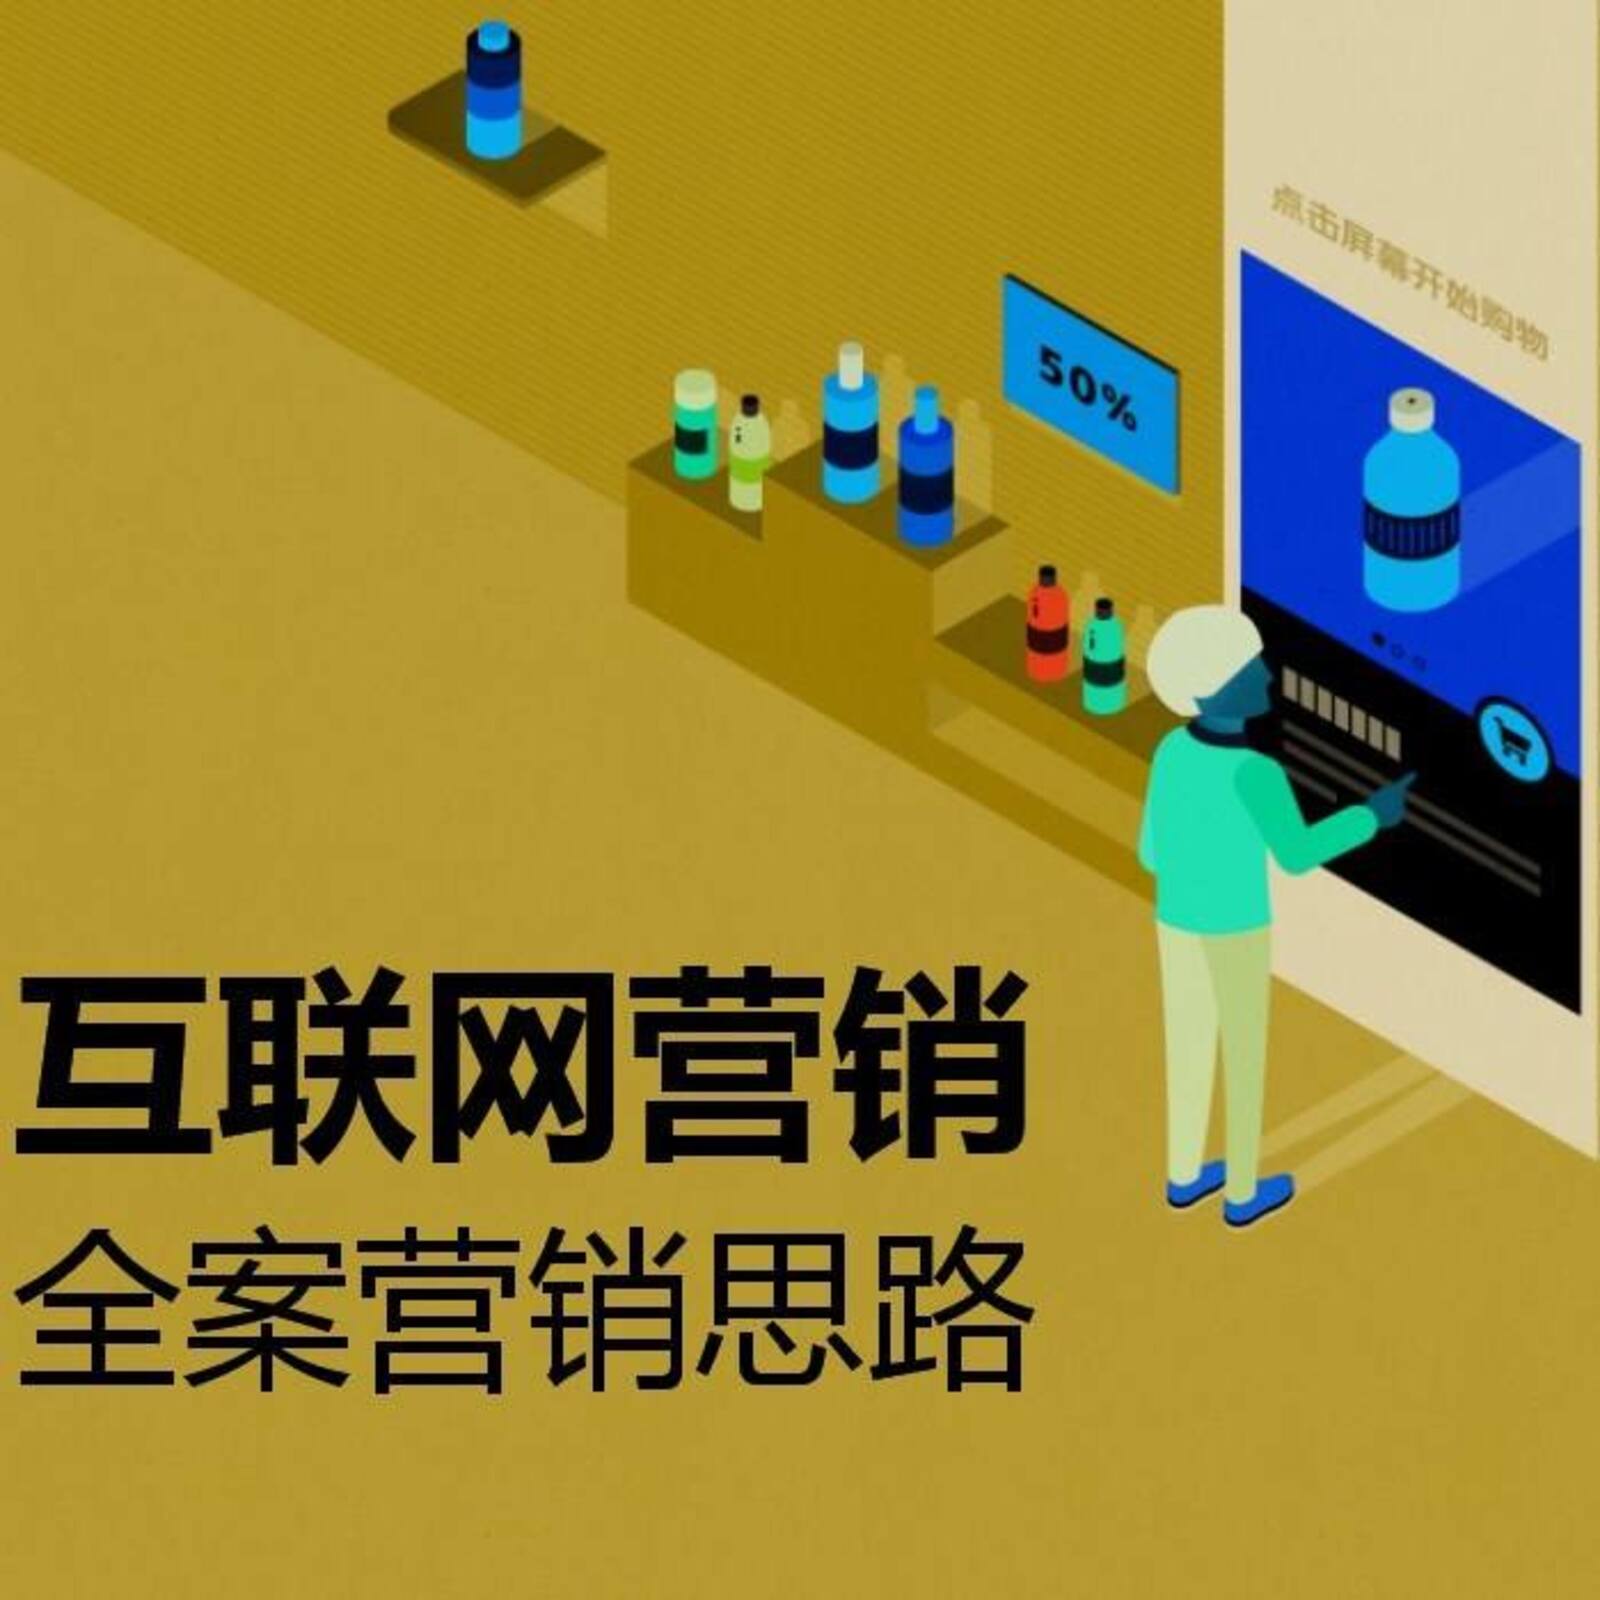 深圳市网企汇网络科技有限公司引流排名